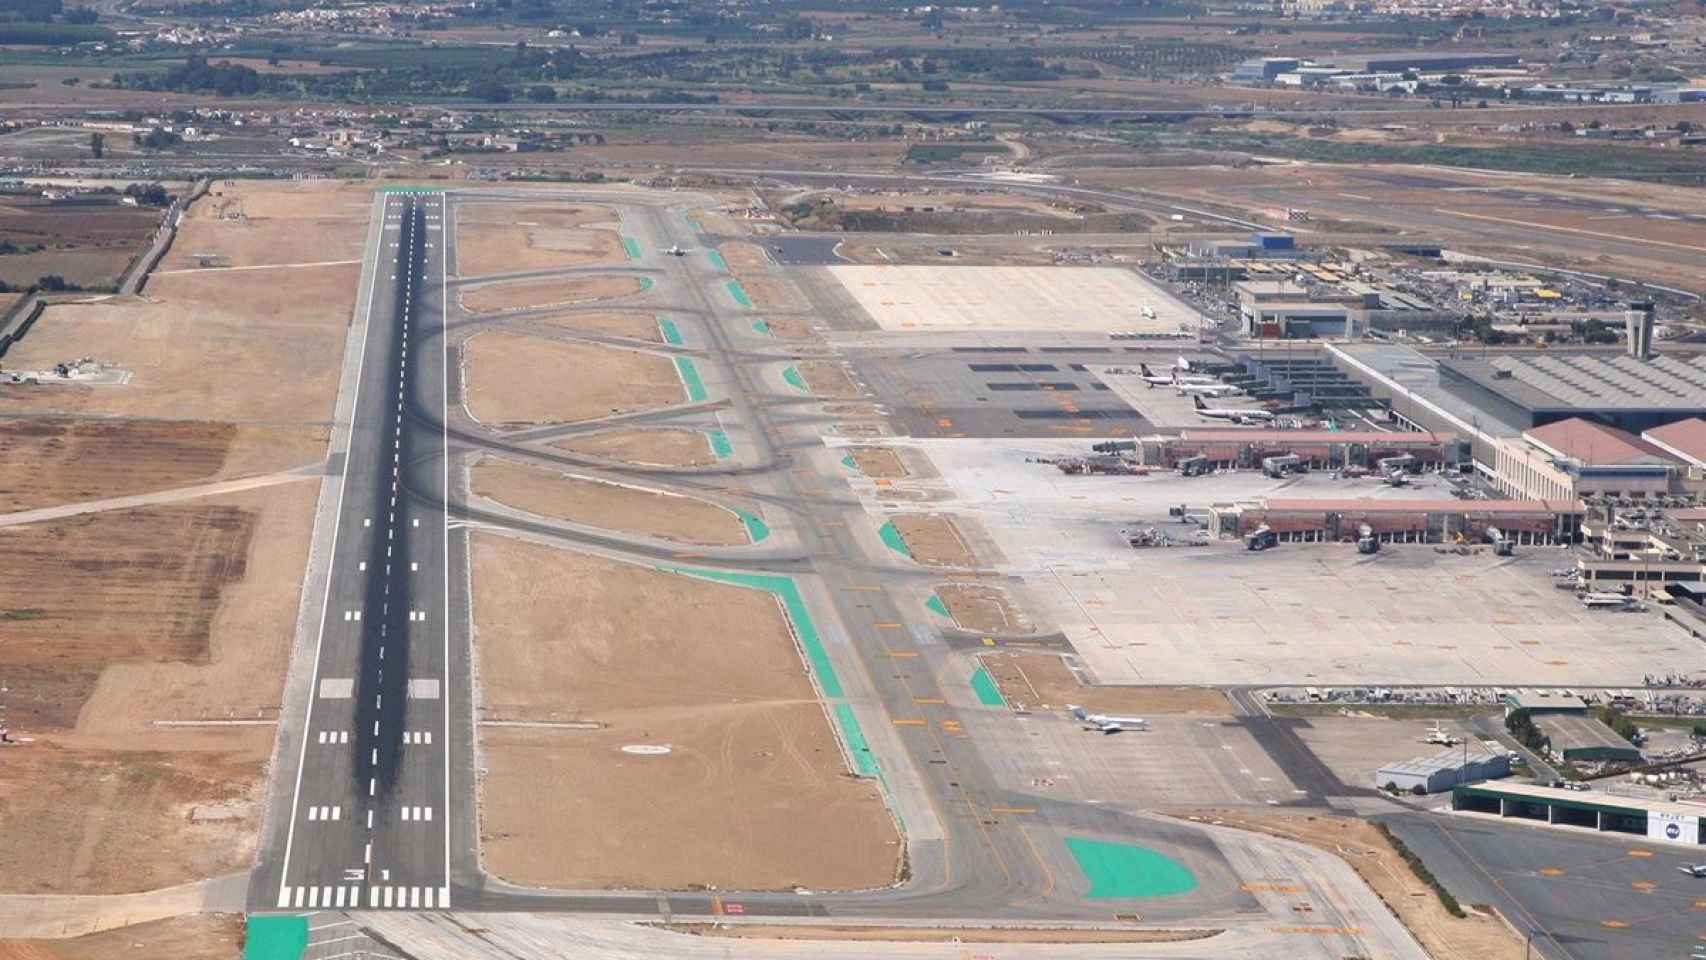 Vista aérea del aeropuerto de Málaga.